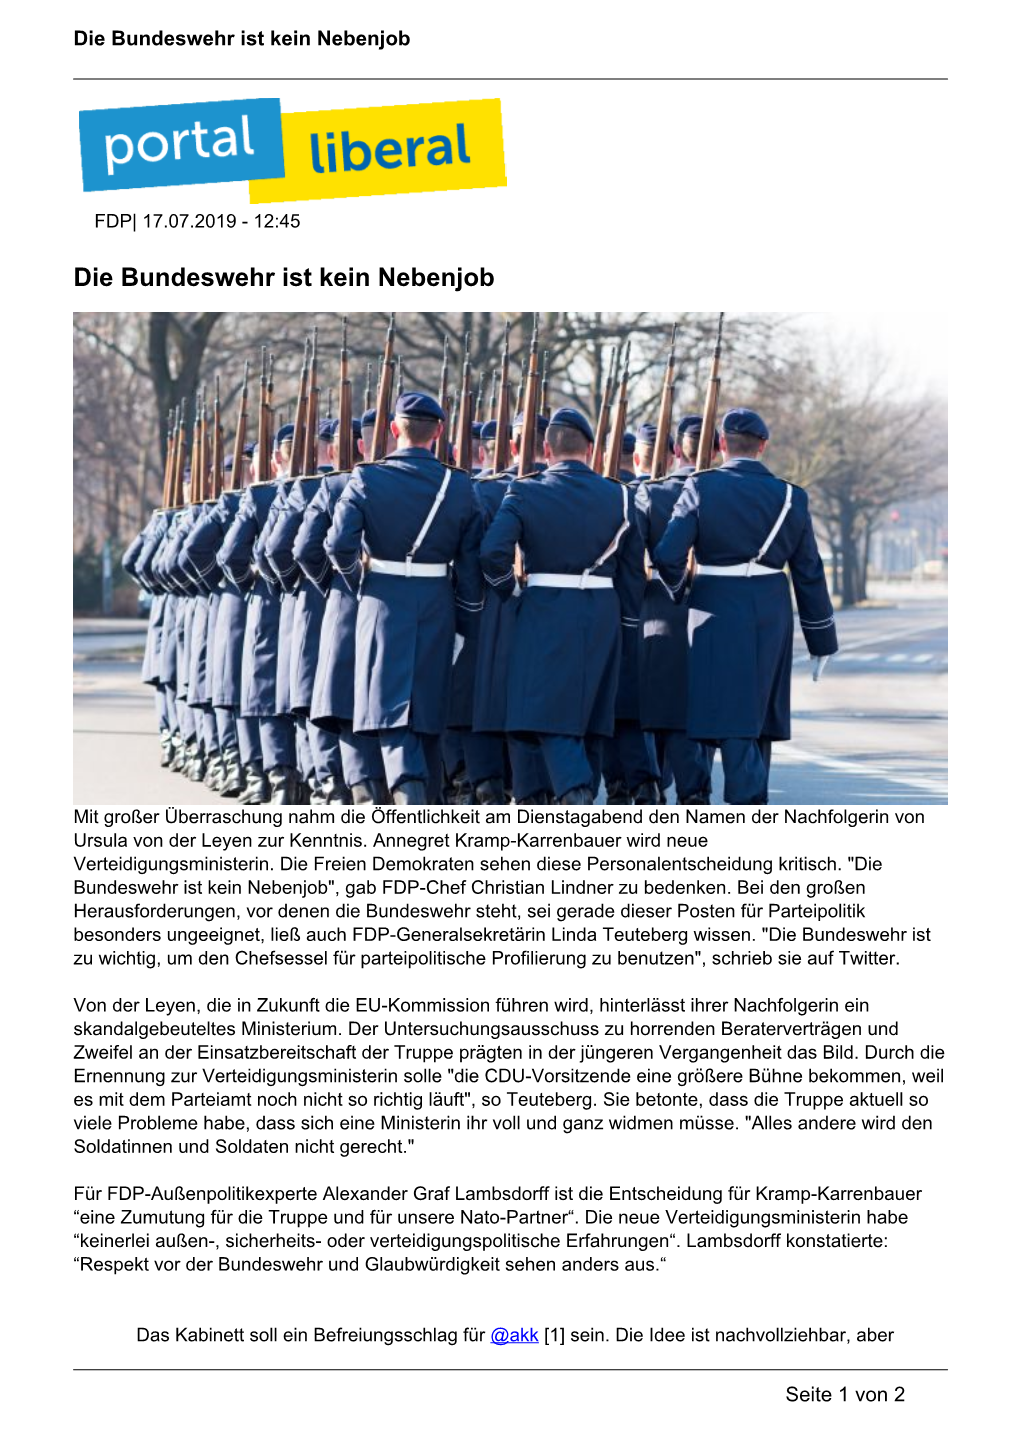 Die Bundeswehr Ist Kein Nebenjob